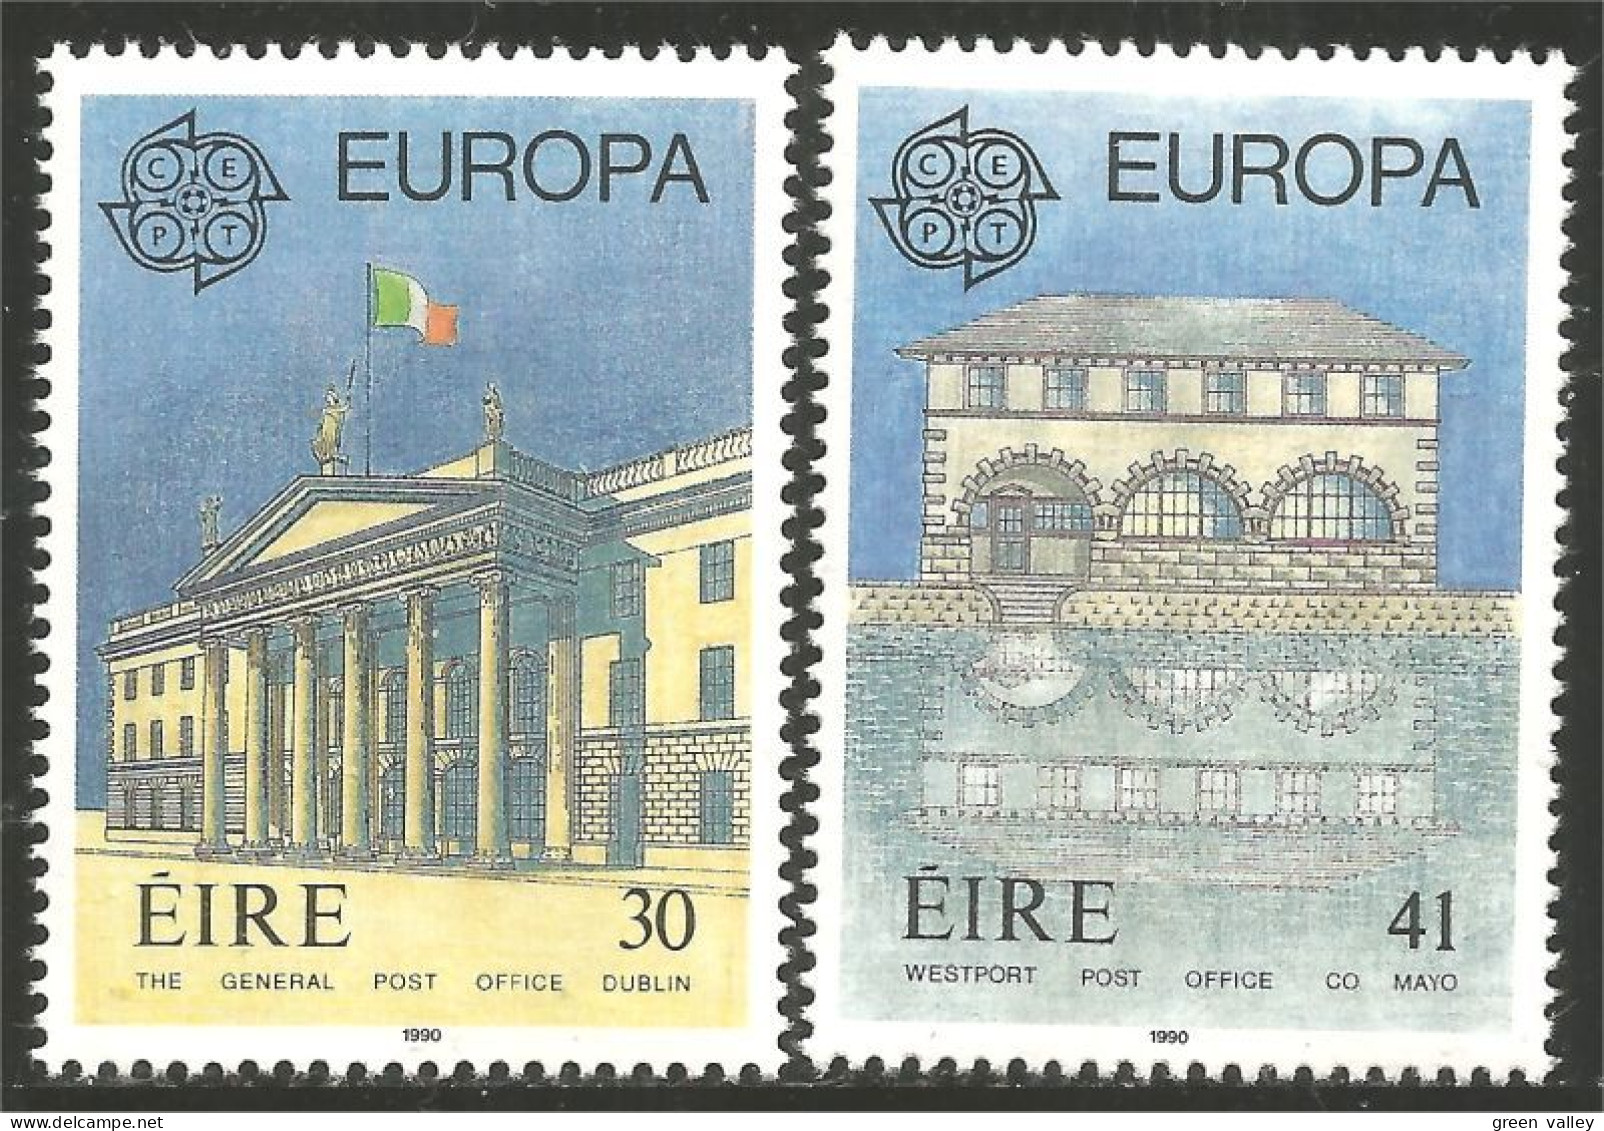 EU90-6a EUROPA-CEPT 1990 Irlande EIRE Bureaux Postes Postal Houses MNH ** Neuf SC - 1990